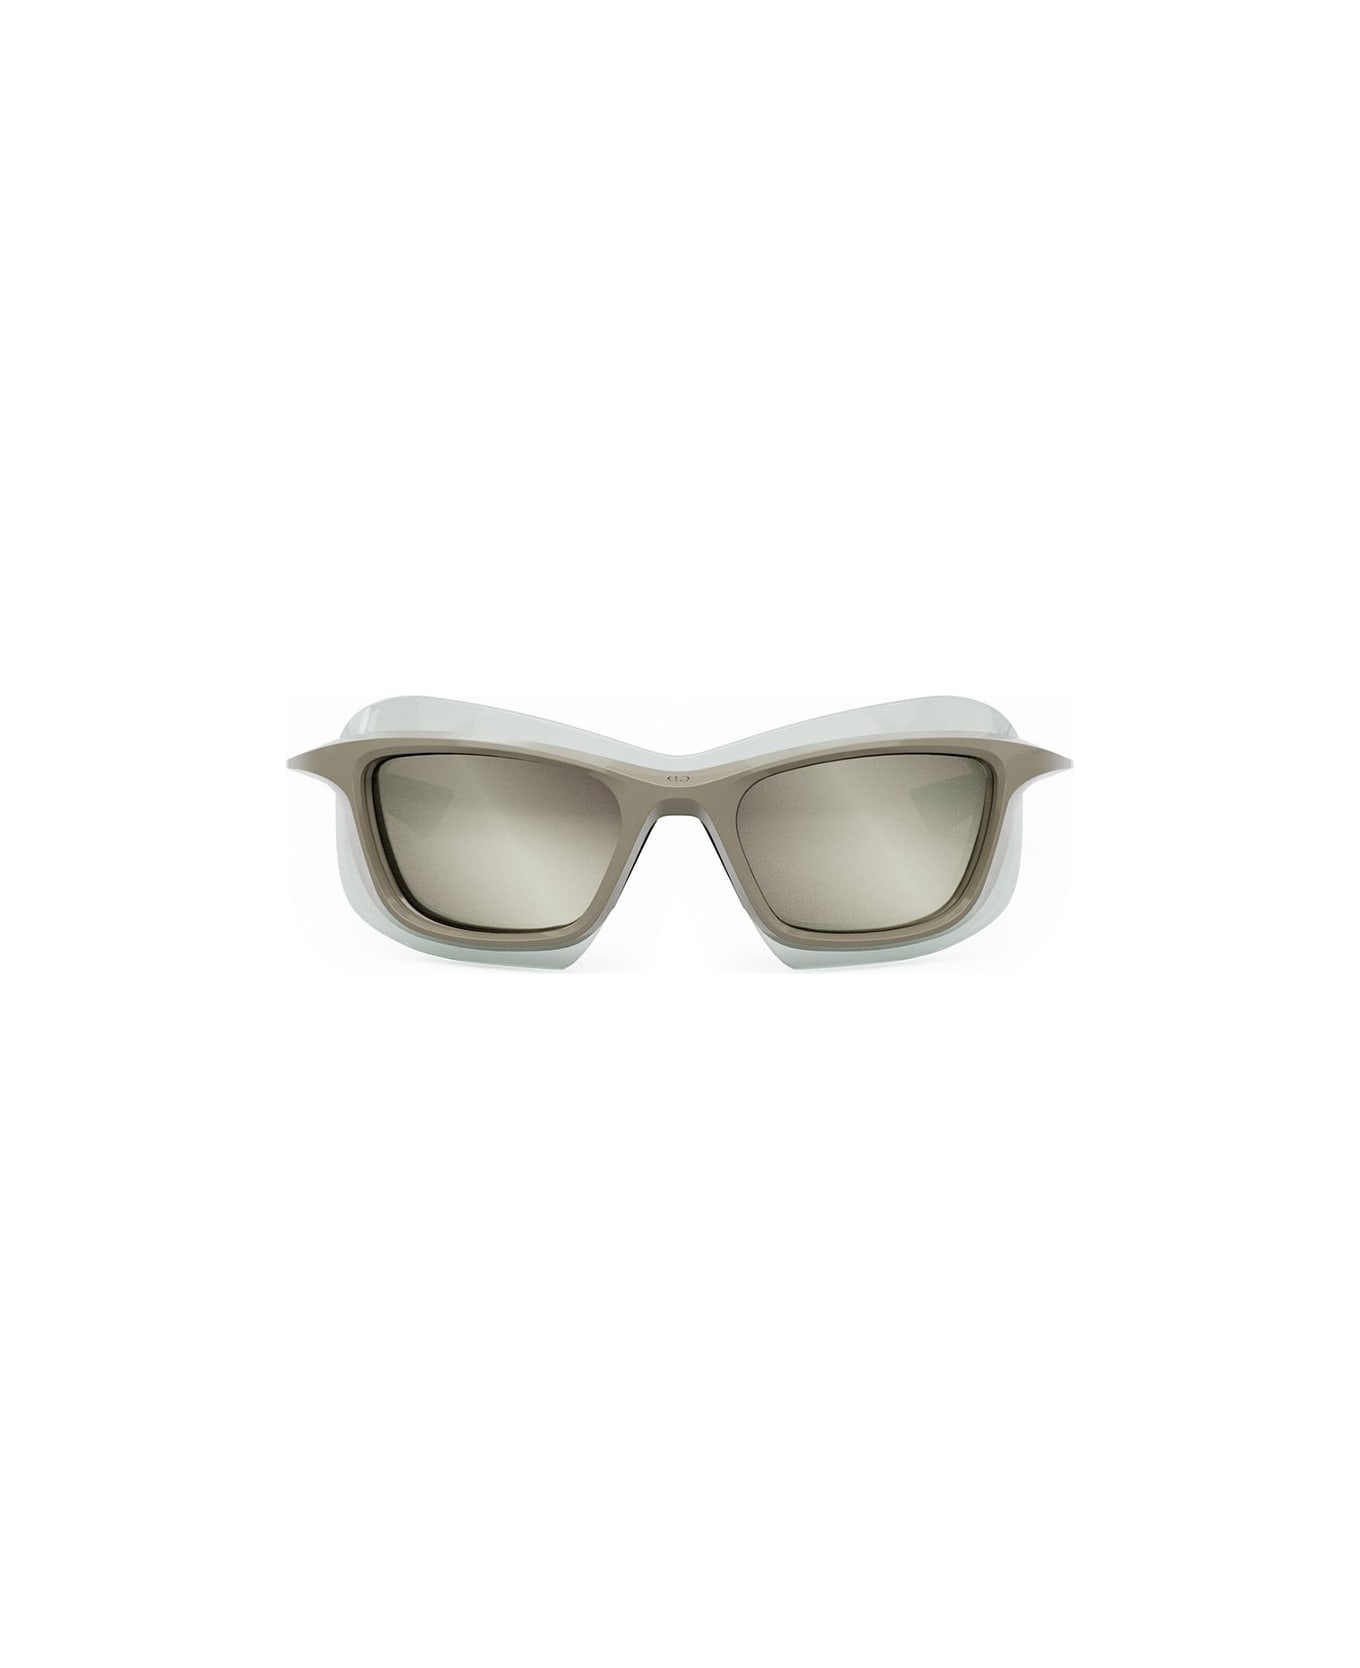 Dior Eyewear Sunglasses - Marrone lucido/Specchiato silver サングラス